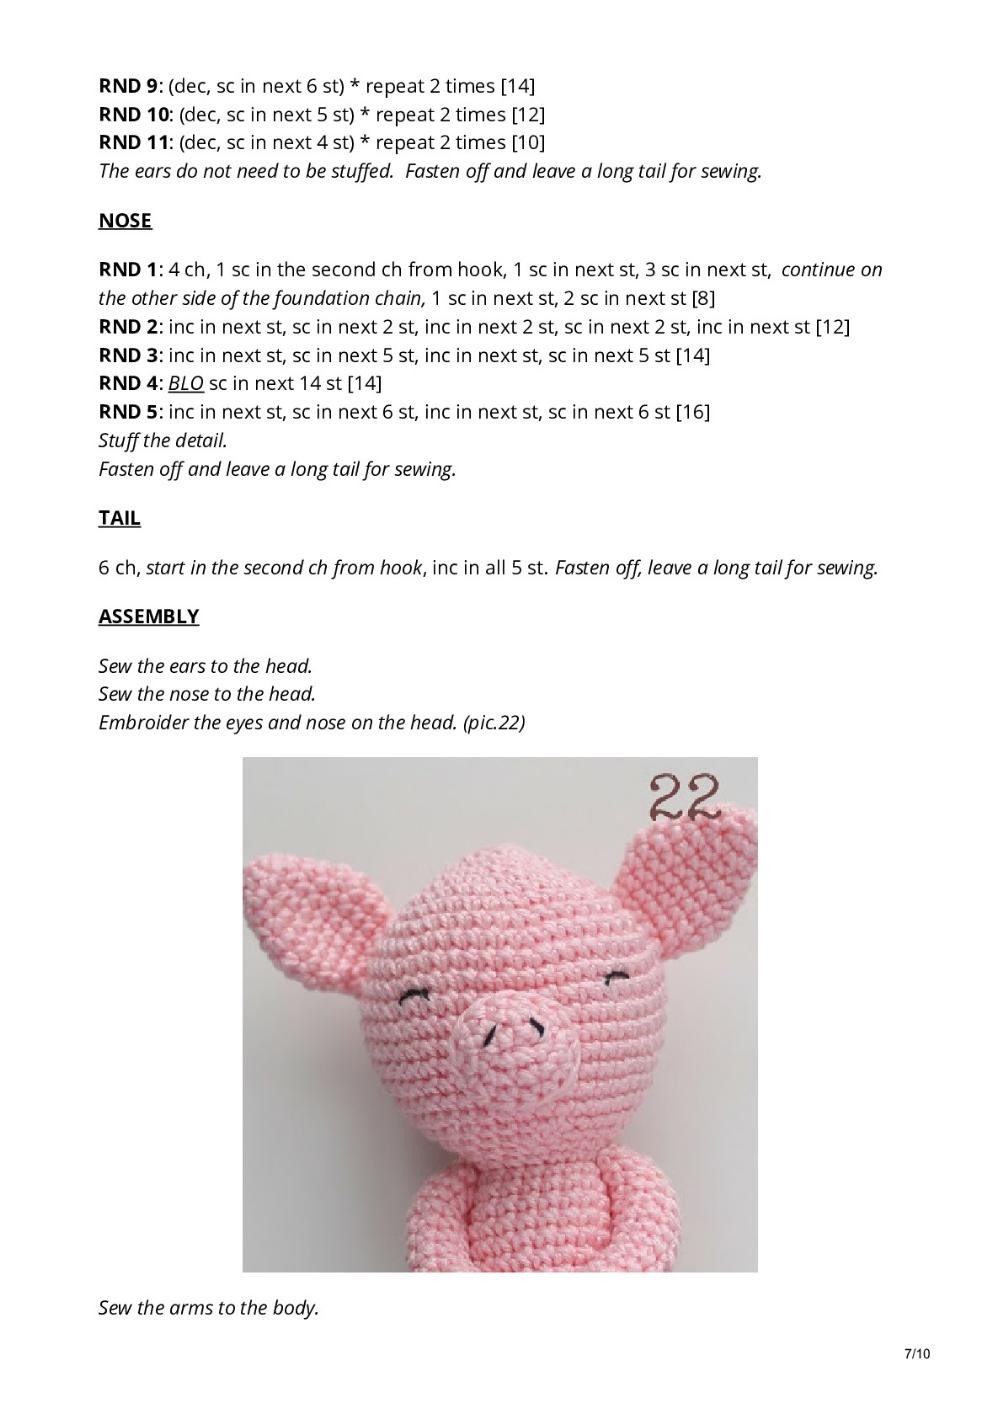 Little crochet pigs FREE PATTERN